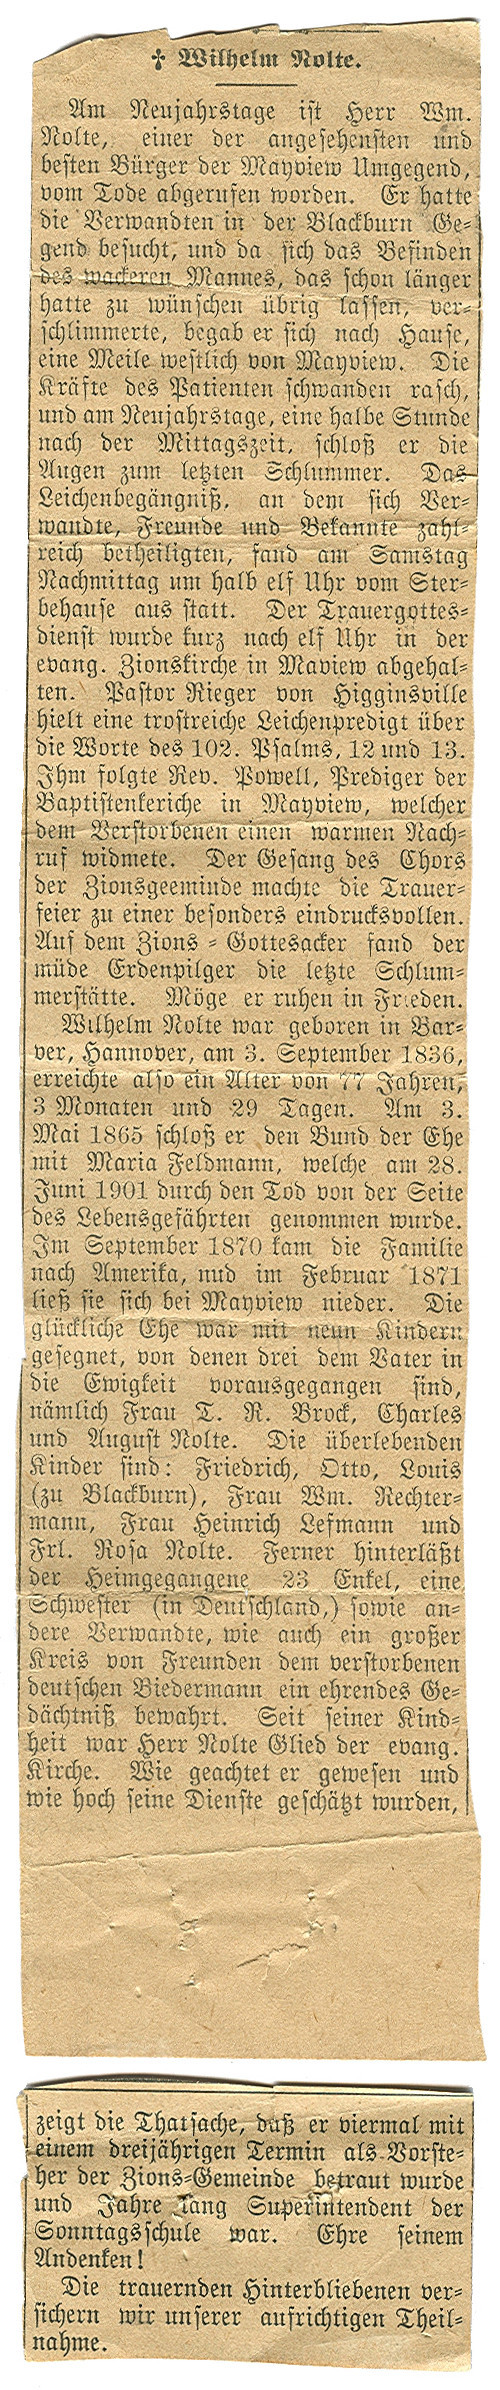 Enlarged image of the 1914 German-language obituary